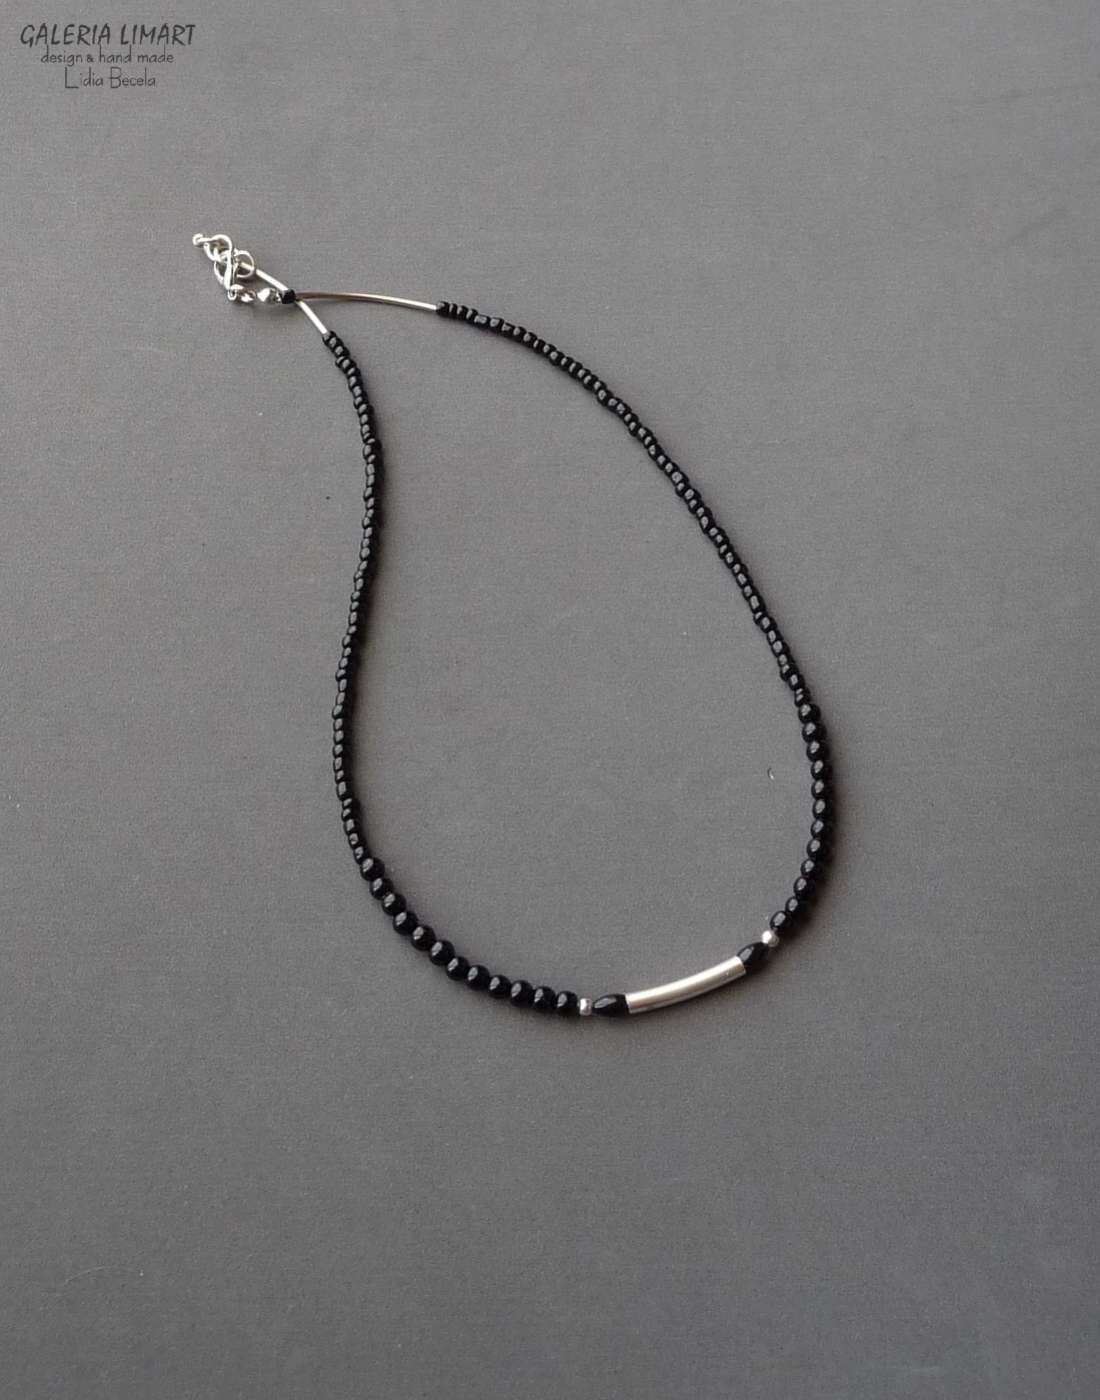  minimalistyczny naszyjnik z mnóstwa drobnych czarnych szklanych koralików (seed beads) dodatkowo ozdobiobny stalowymi rurkami. Dla NIEGO lub dla NIEJ